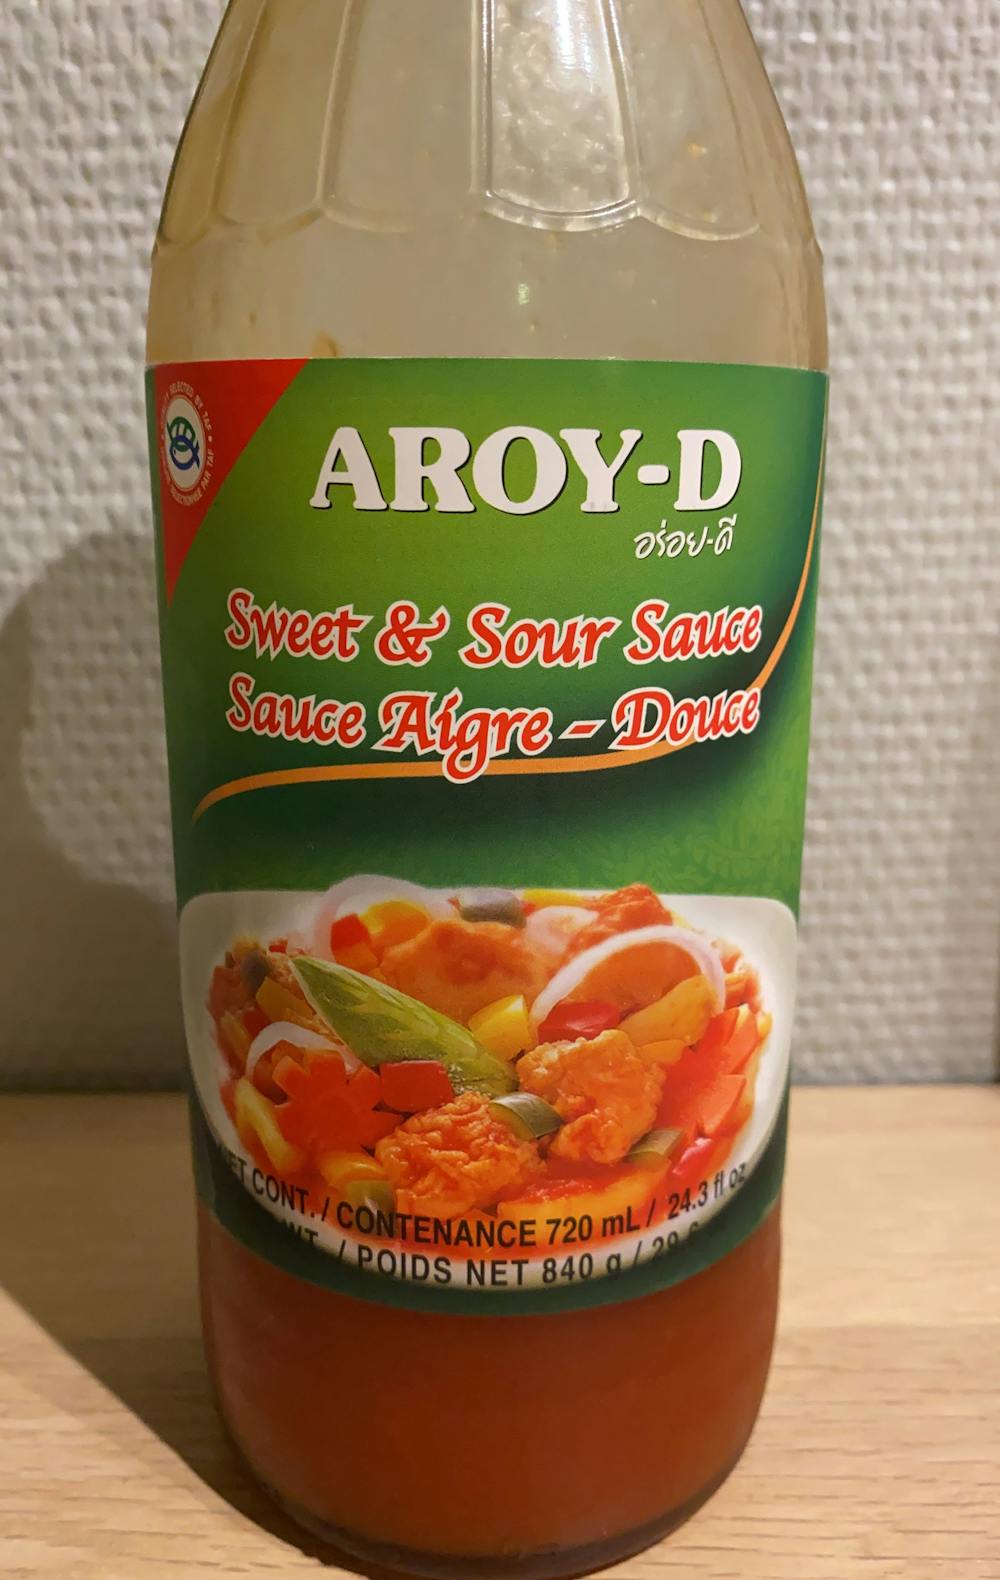 Sweet & sour sauce, Aroy-D